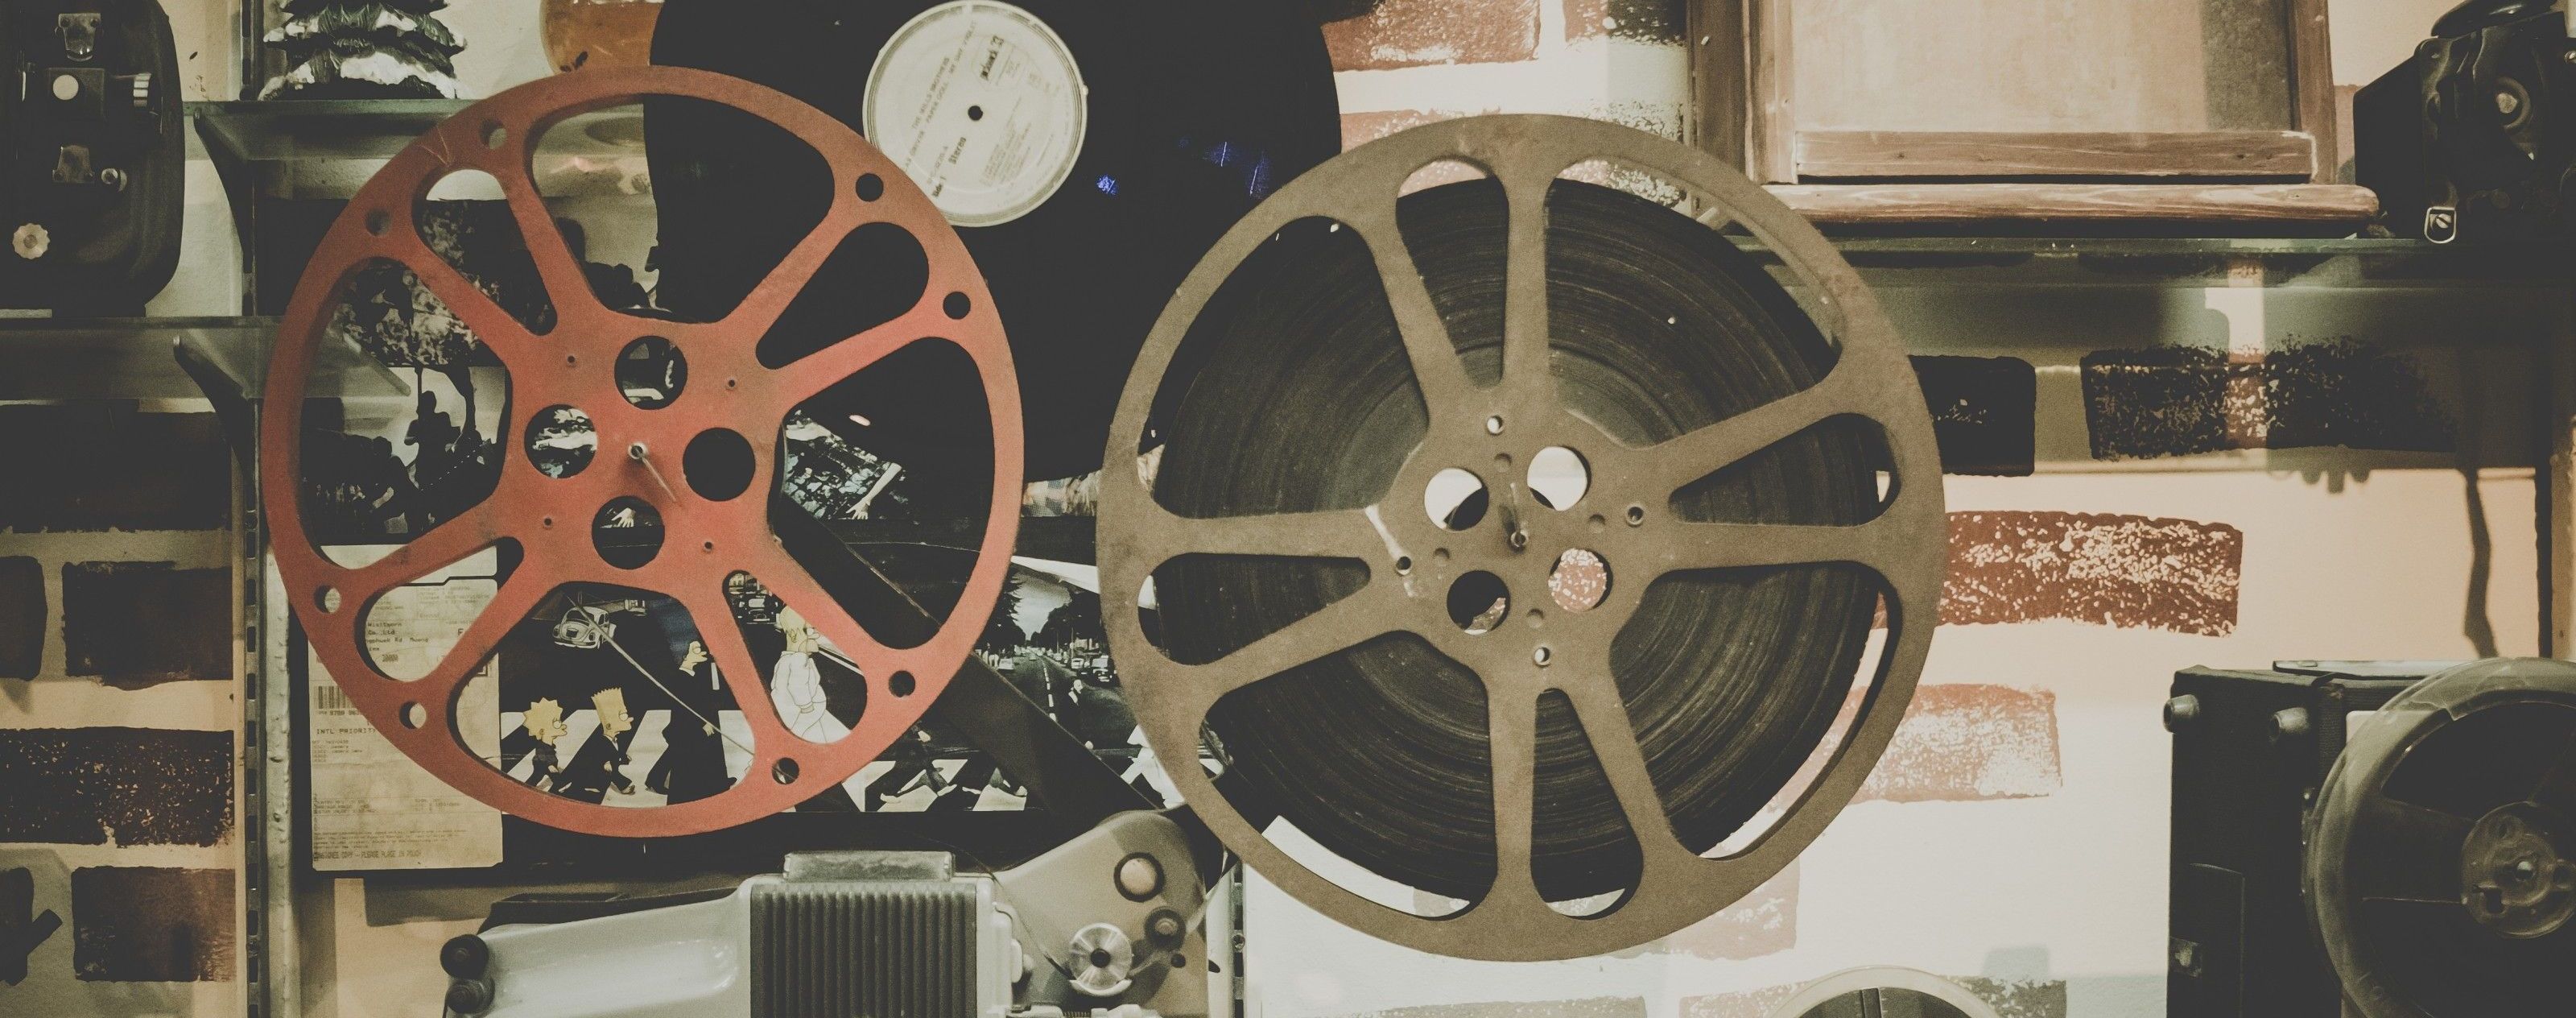 В Токио обнаружили потерянный украинский фильм, снятый почти 90 лет назад